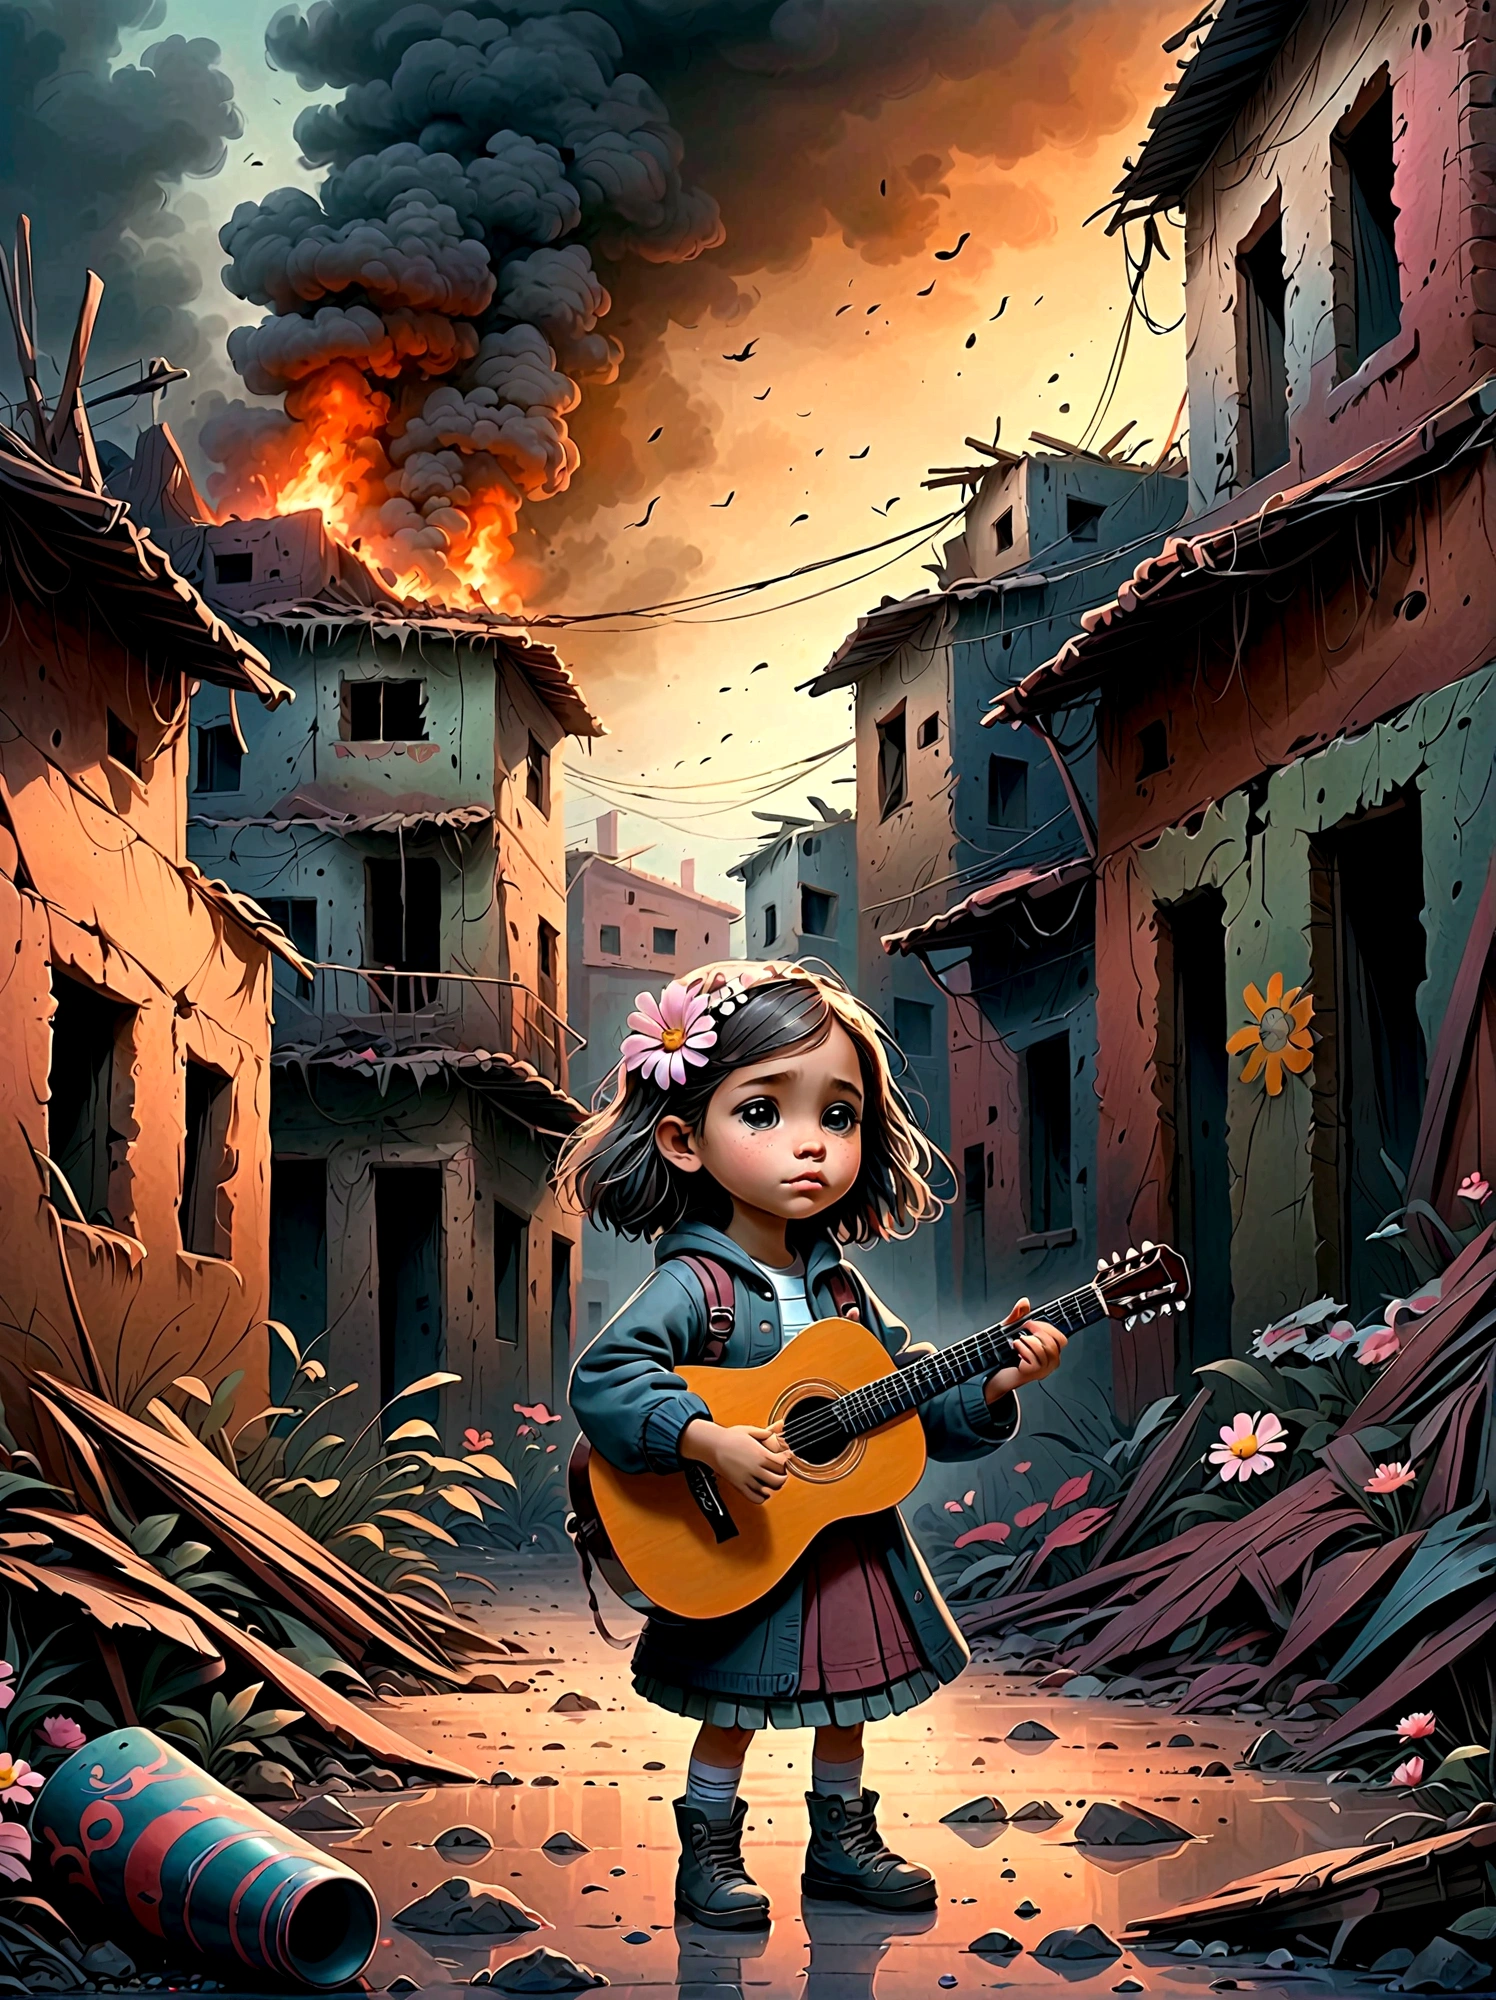 戦争で荒廃した, 煙の廃墟, 子供がギターを弾いている, (粘り強い小さな花が子供に咲く&#39;の足), このシーンは、周囲の荒廃と、 . 遺跡には瓦礫や建物の残骸が溢れている, 背景には煙と火がある. 子供の表情は暗い, 厳しい現実を反映している. 全体的な雰囲気は感動的で感動的である, 落ち着いた色調とドラマチックな照明で、音楽が表現する荒廃と希望のきらめきを強調する.